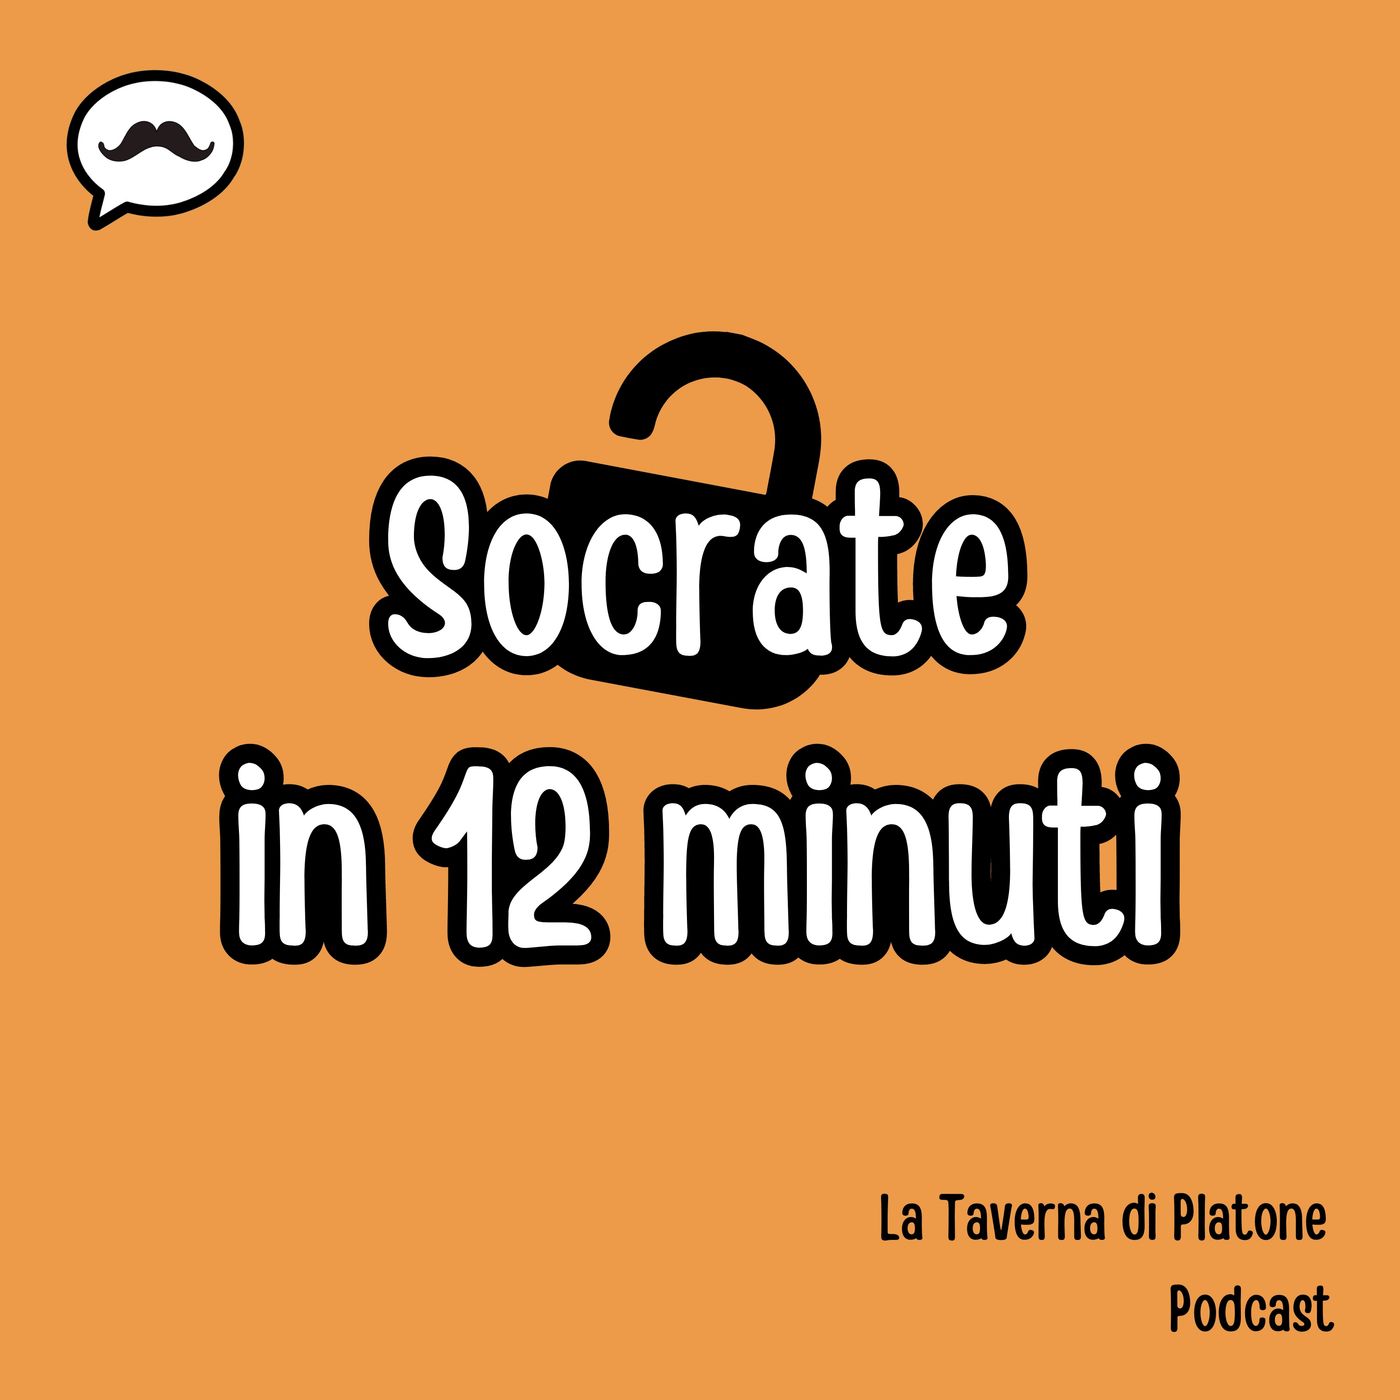 Socrate in 12 minuti